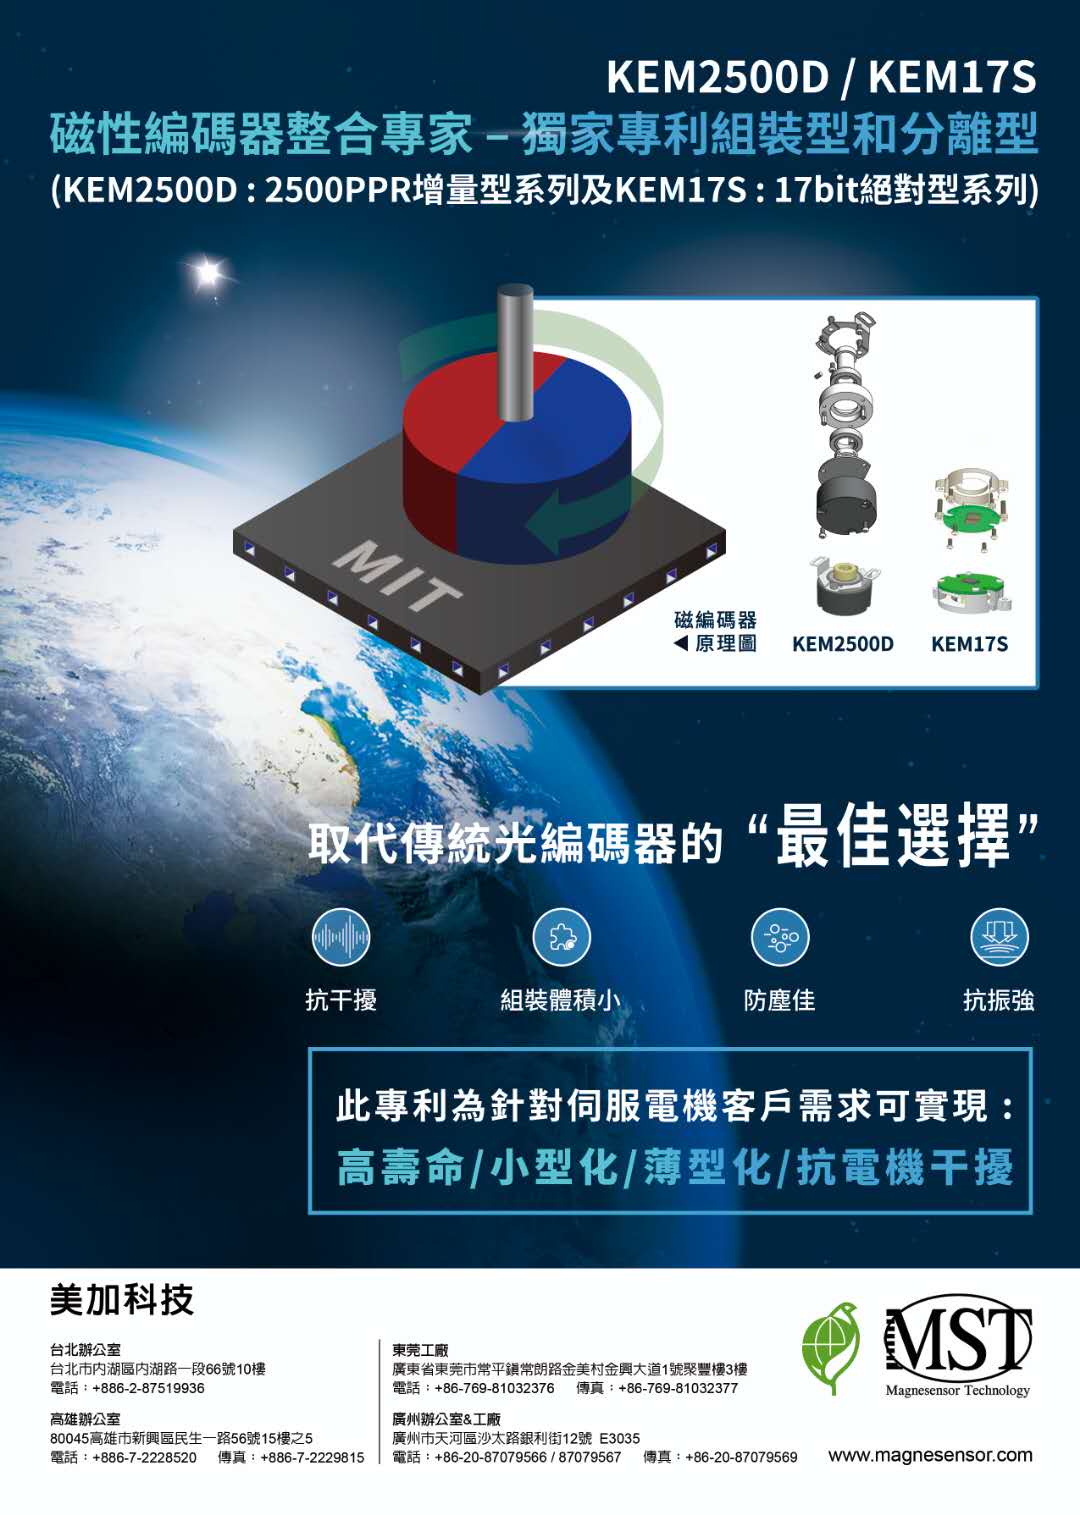 中国霍尔效应电流传感器市场规模达到了192.71百万美元？